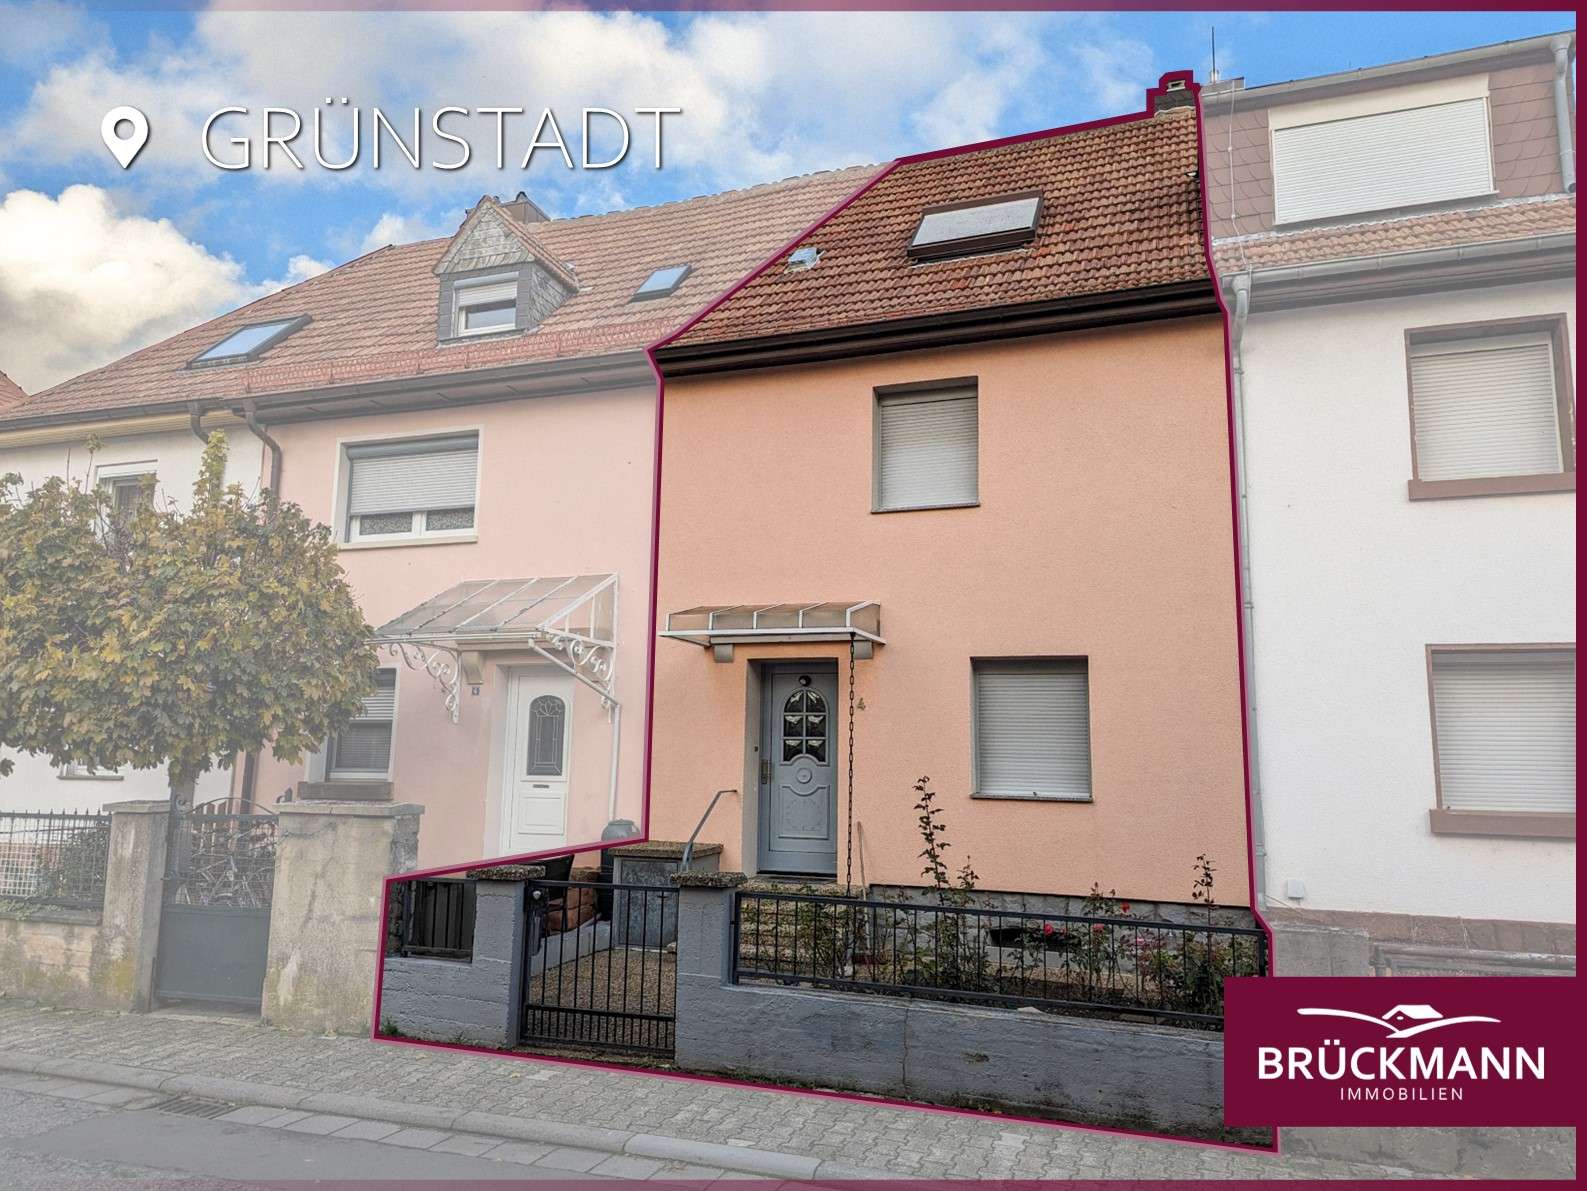 Gemütliches Reihenmittelhaus mit Renovierungsbedarf & kleinem Garten sucht eine neue, nette Familie!, 67269 Grünstadt, Reihenmittelhaus